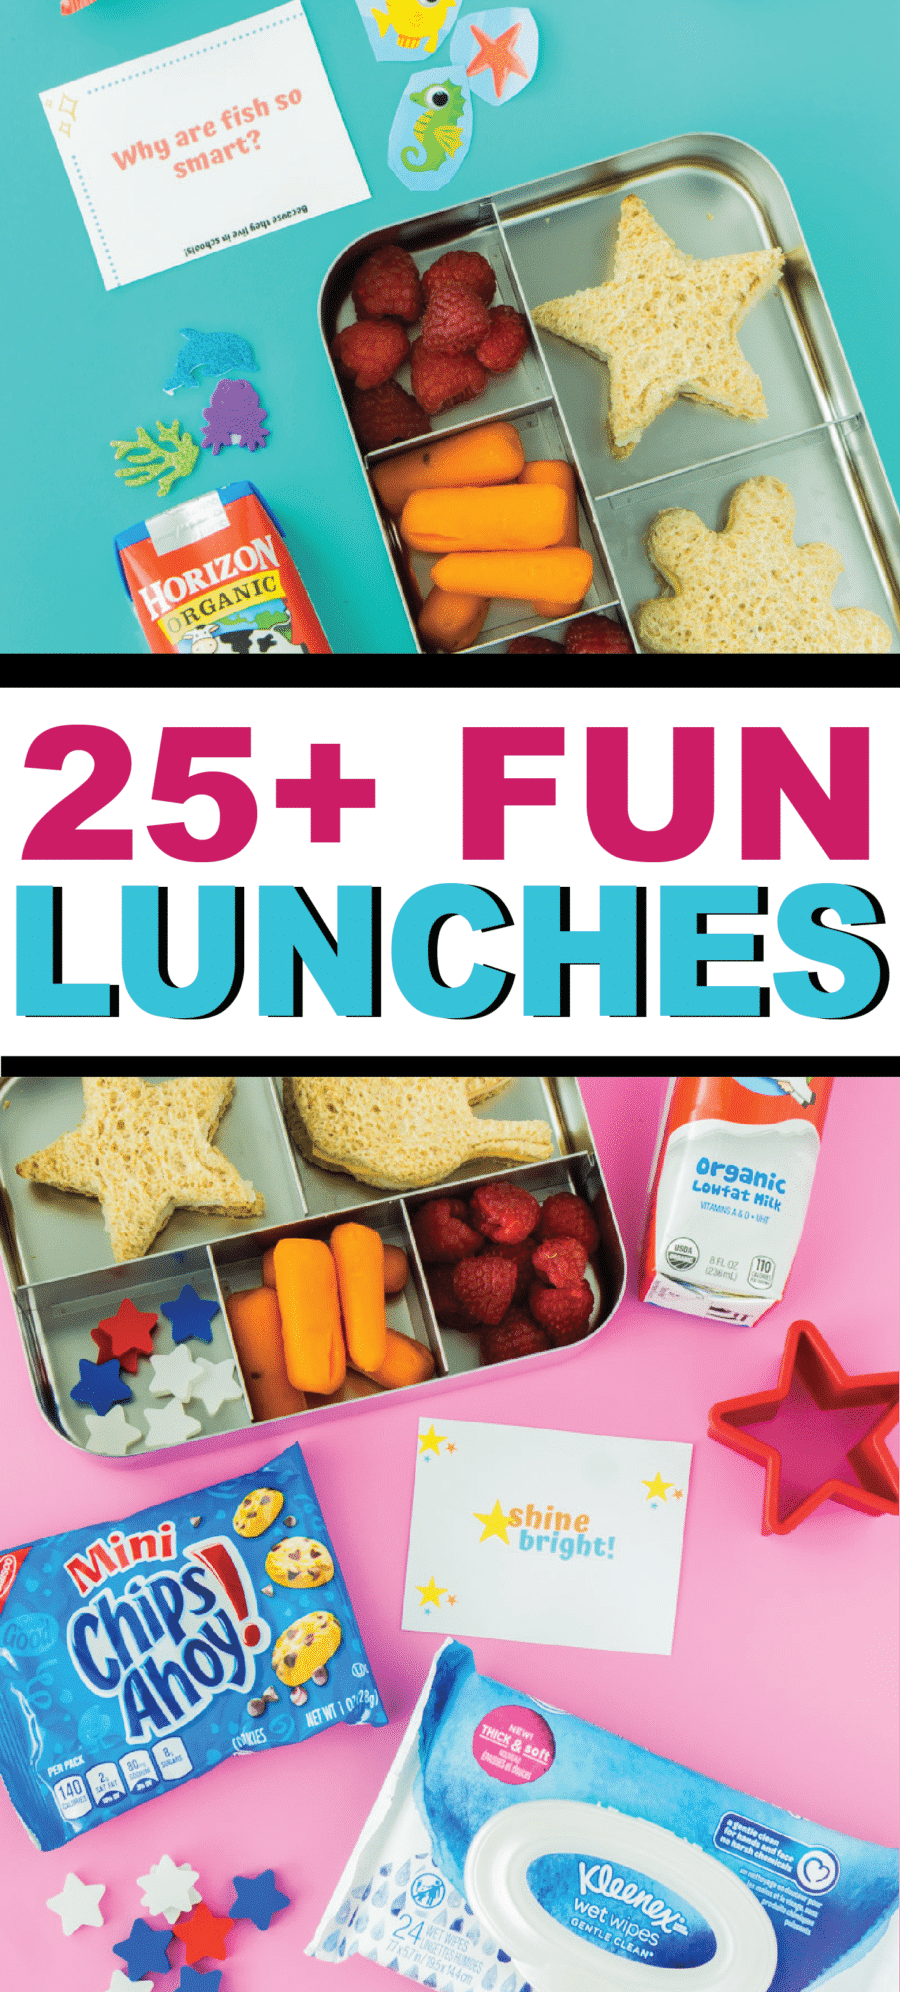 25 मज़ा स्कूल दोपहर के भोजन के विचारों और मुफ्त मुद्रण योग्य लंच बॉक्स नोट्स, चुटकुले, और बहुत कुछ!